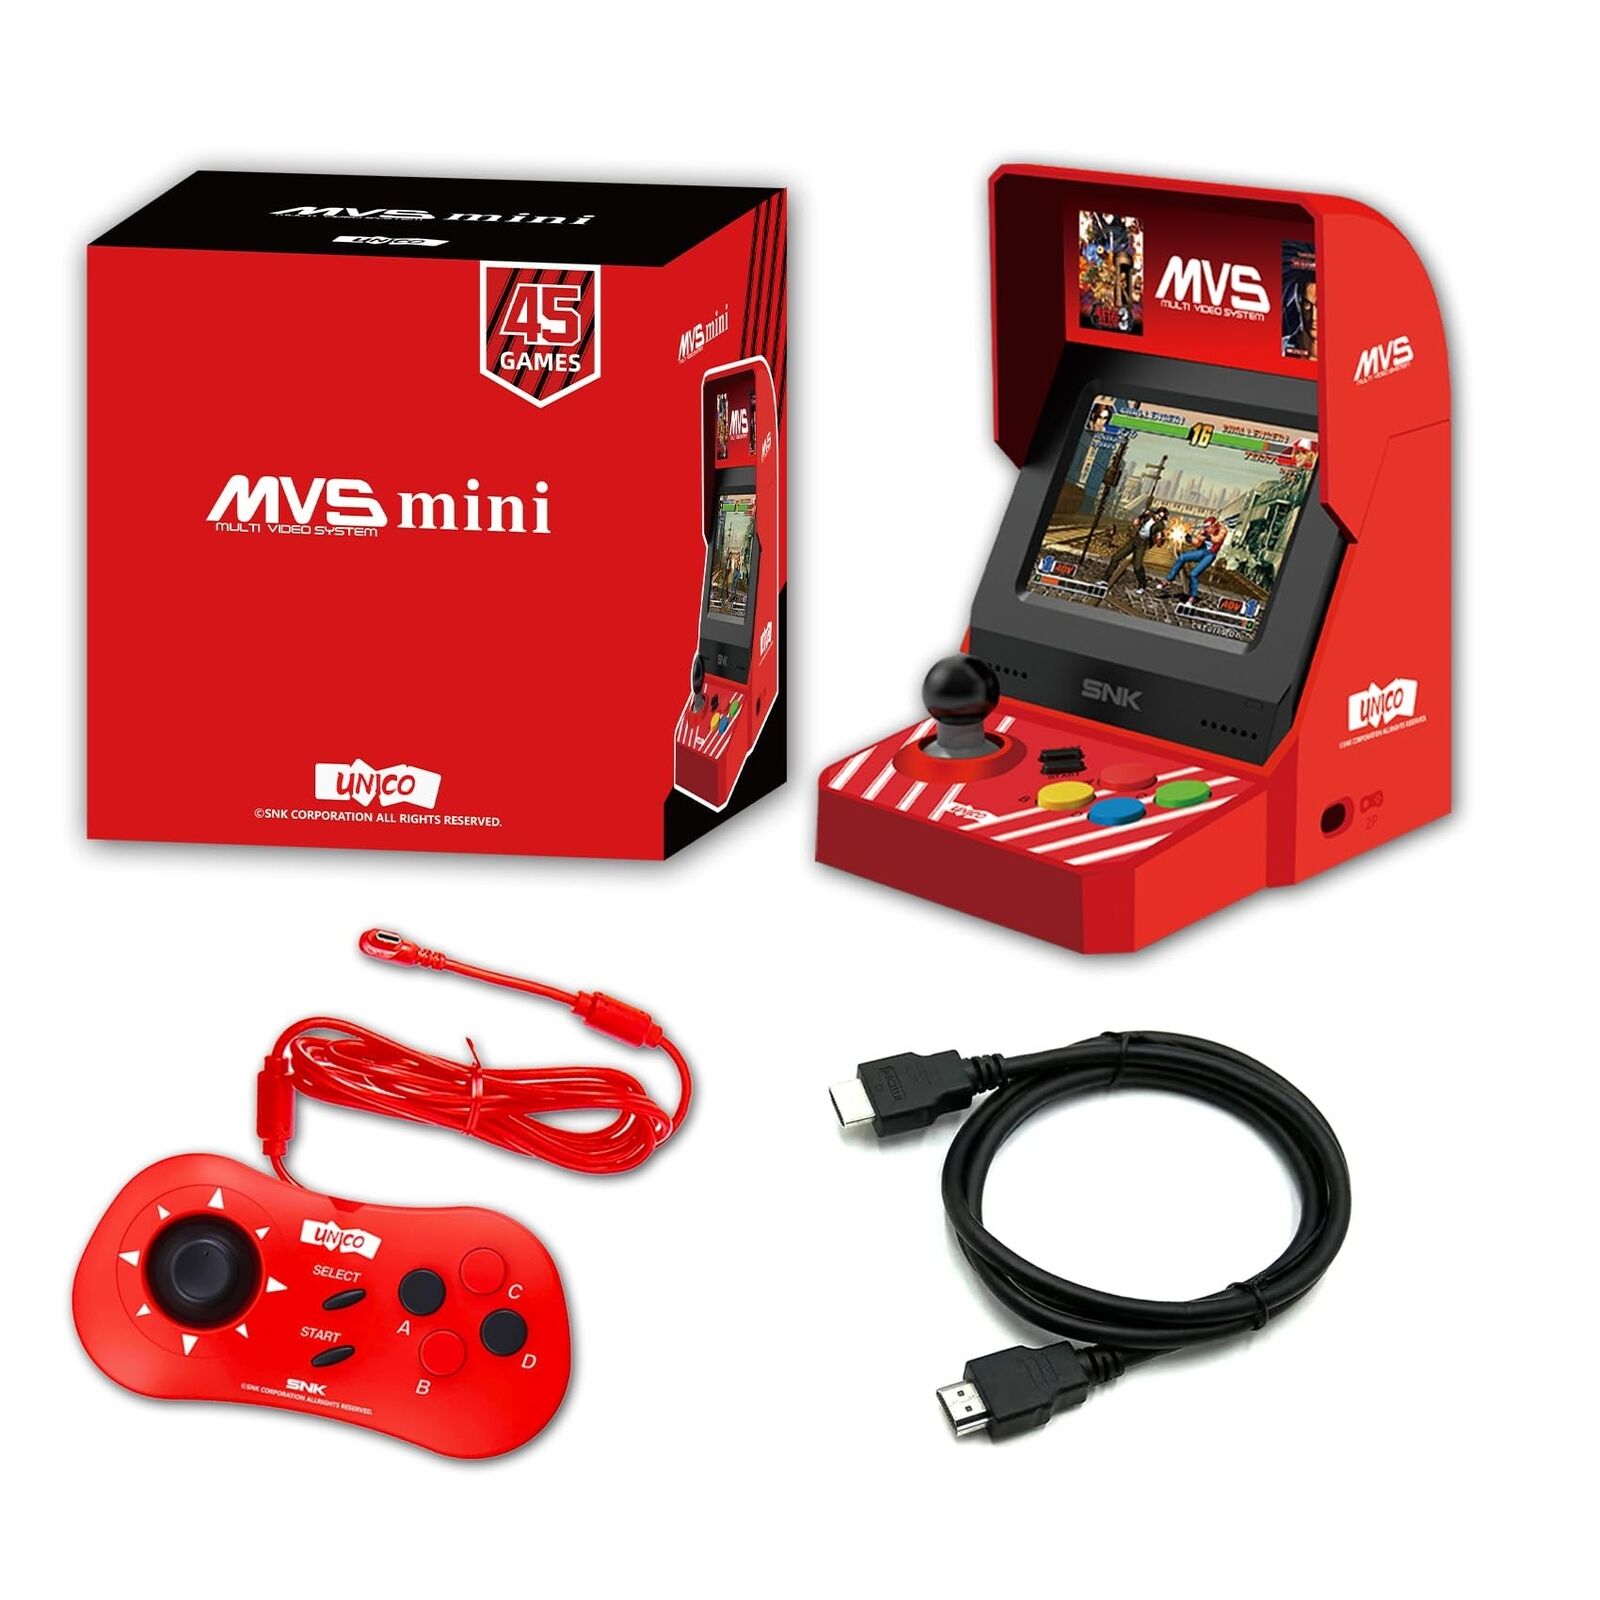 UNICO SNK MVS Mini Arcade and Red Controller [Included HDMI Cable], 45 Pre-Lo...